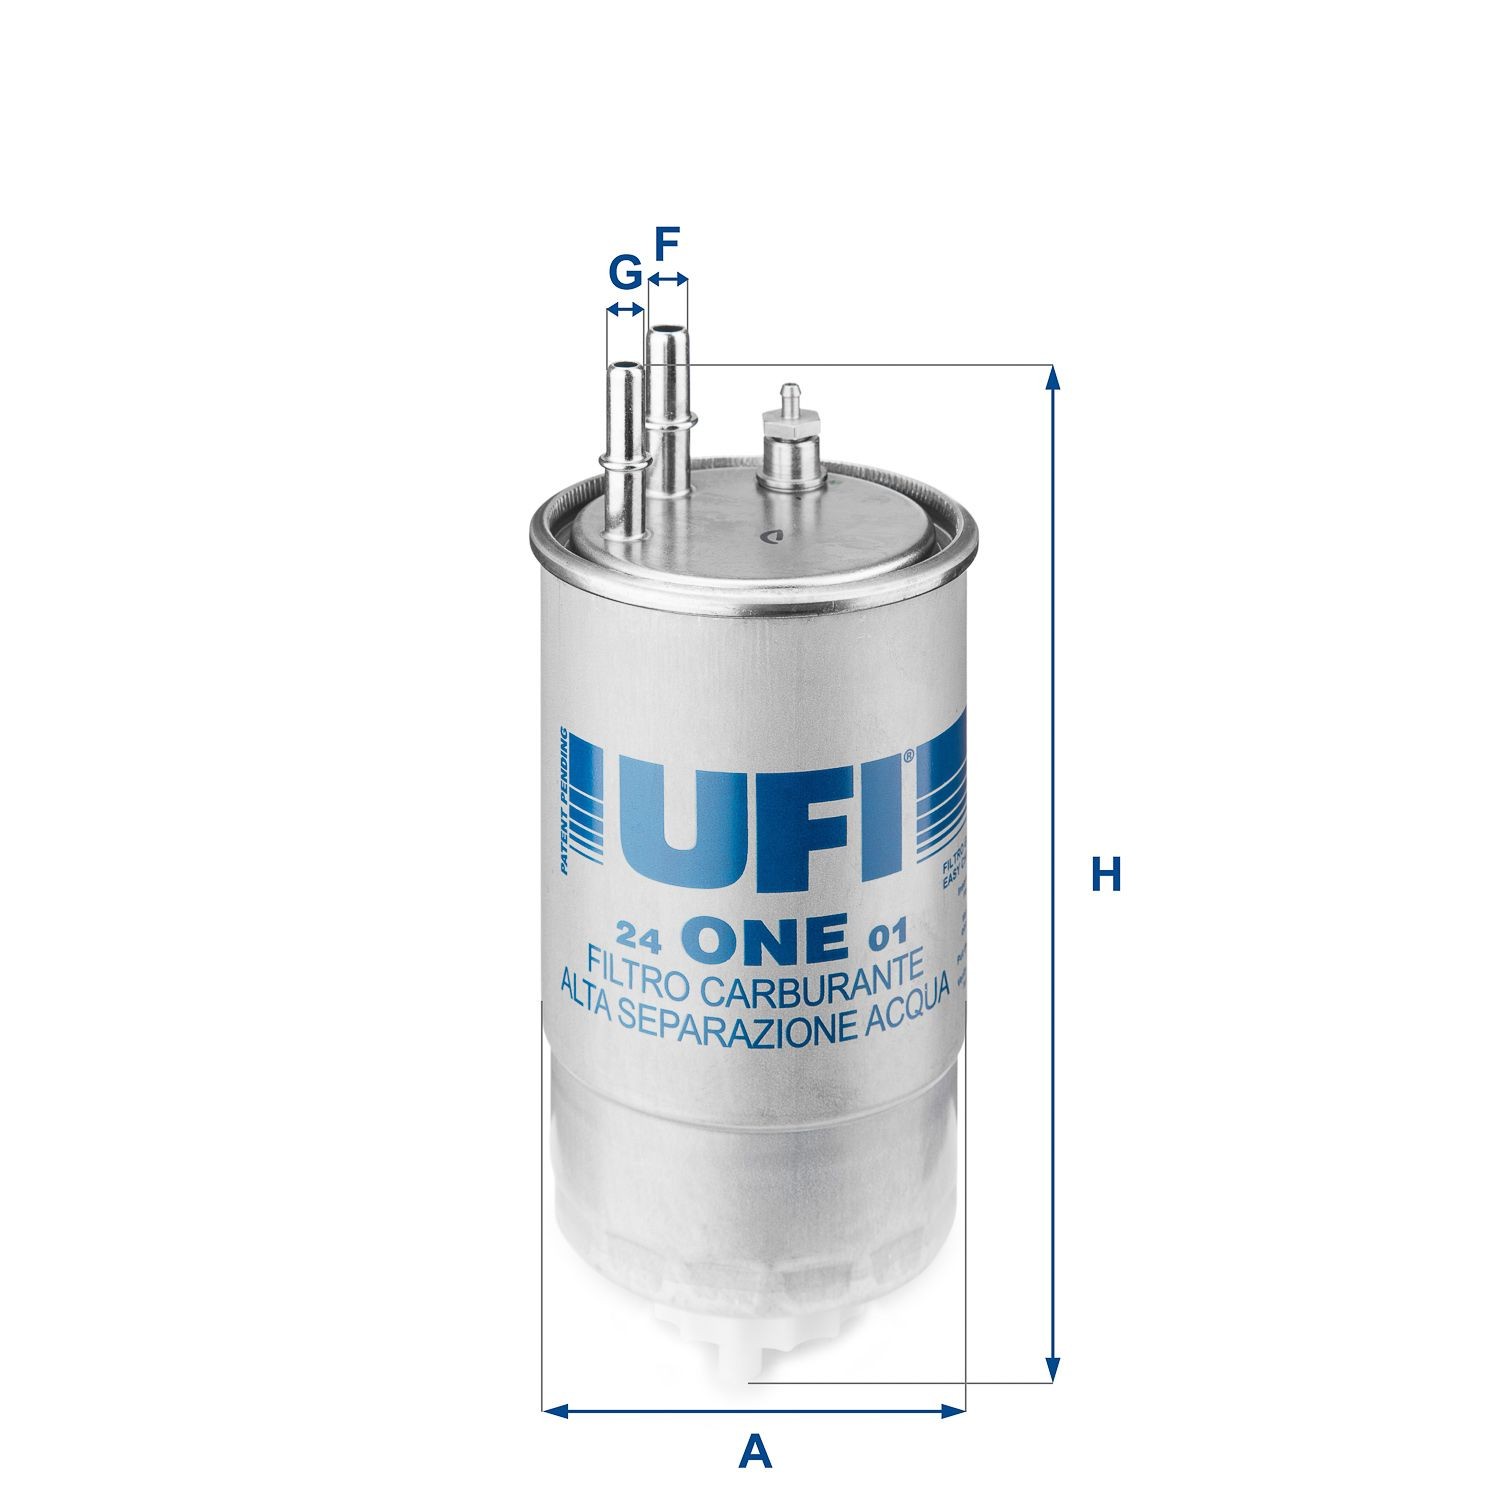 24.ONE.01 Kütusefilter UFI - Soodsate hindadega kogemus